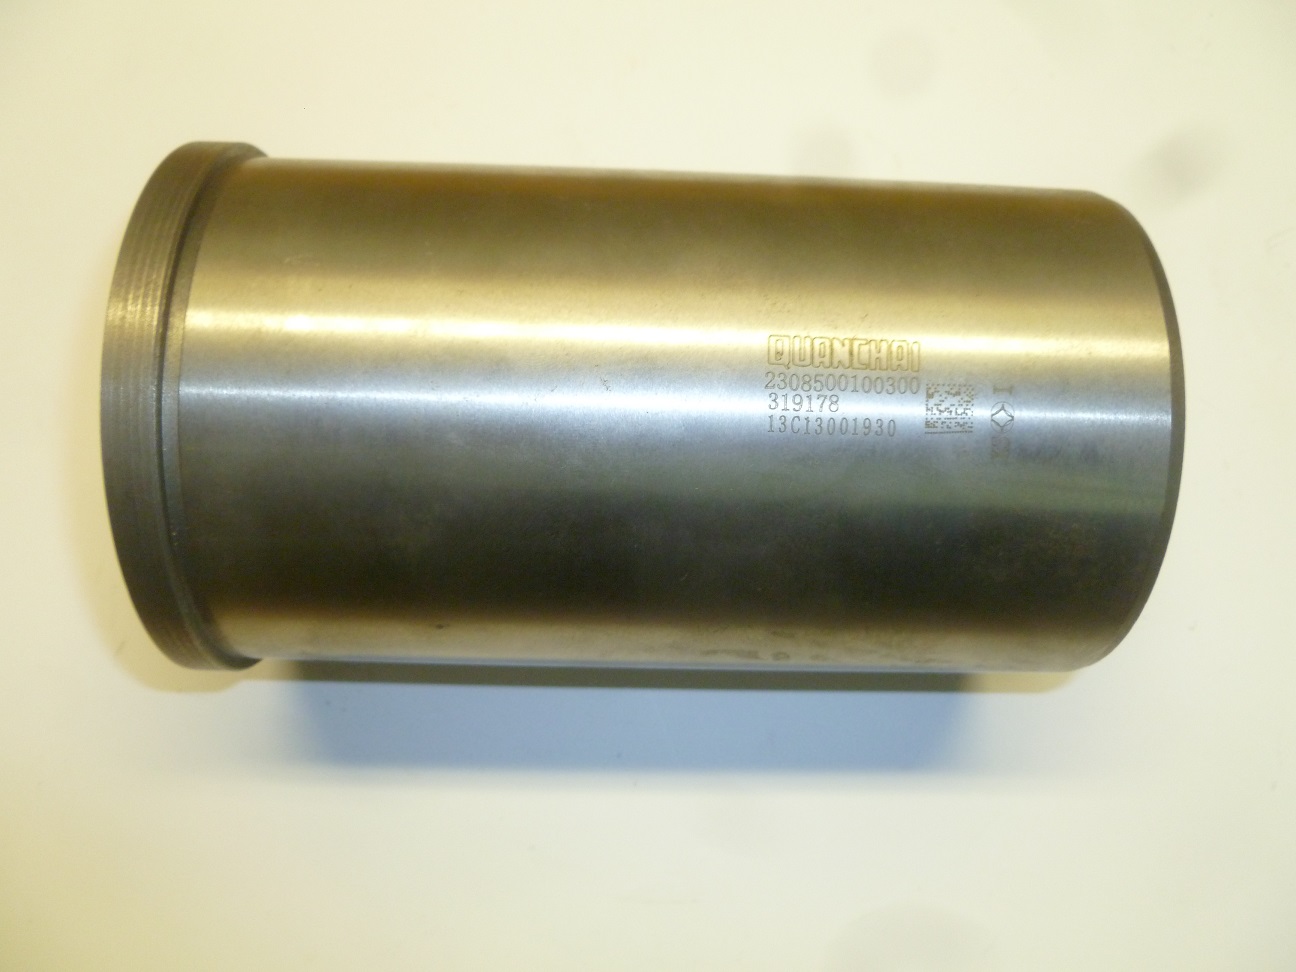 Гильза цилиндра (D=85 мм) TDQ 12 3L/Cylinder Liner